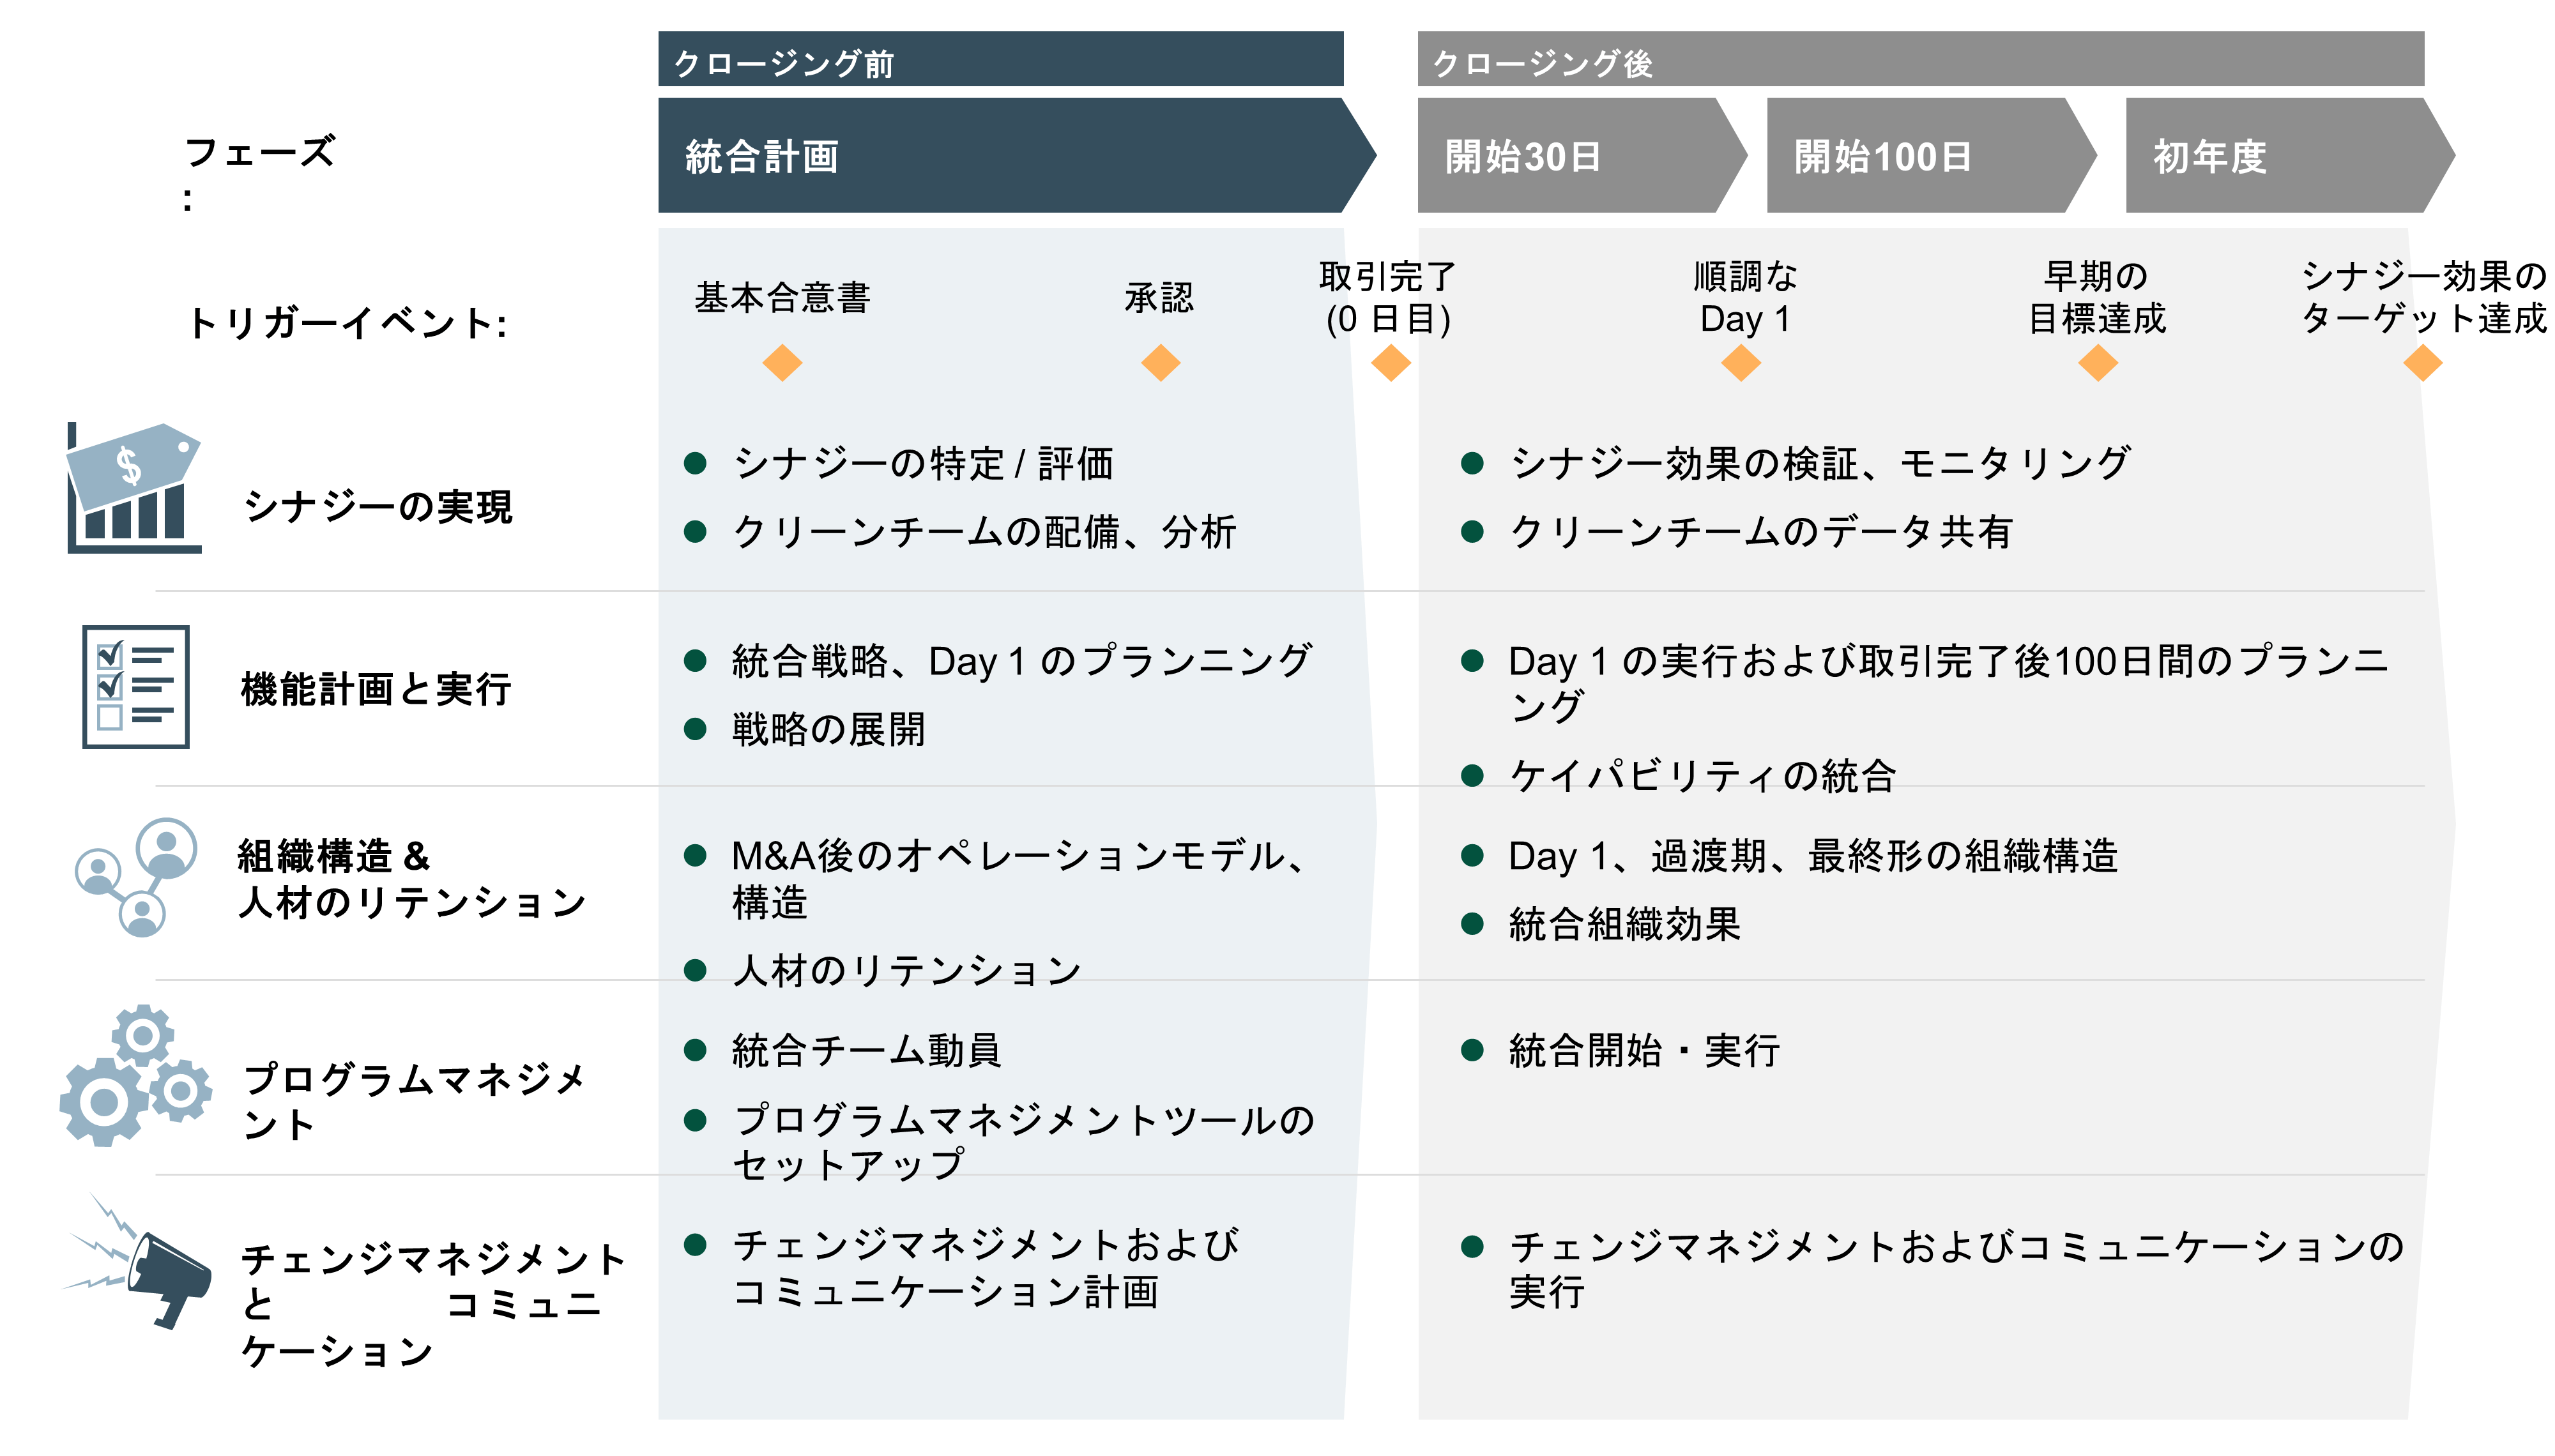 post-merger-integration-jp.PNG